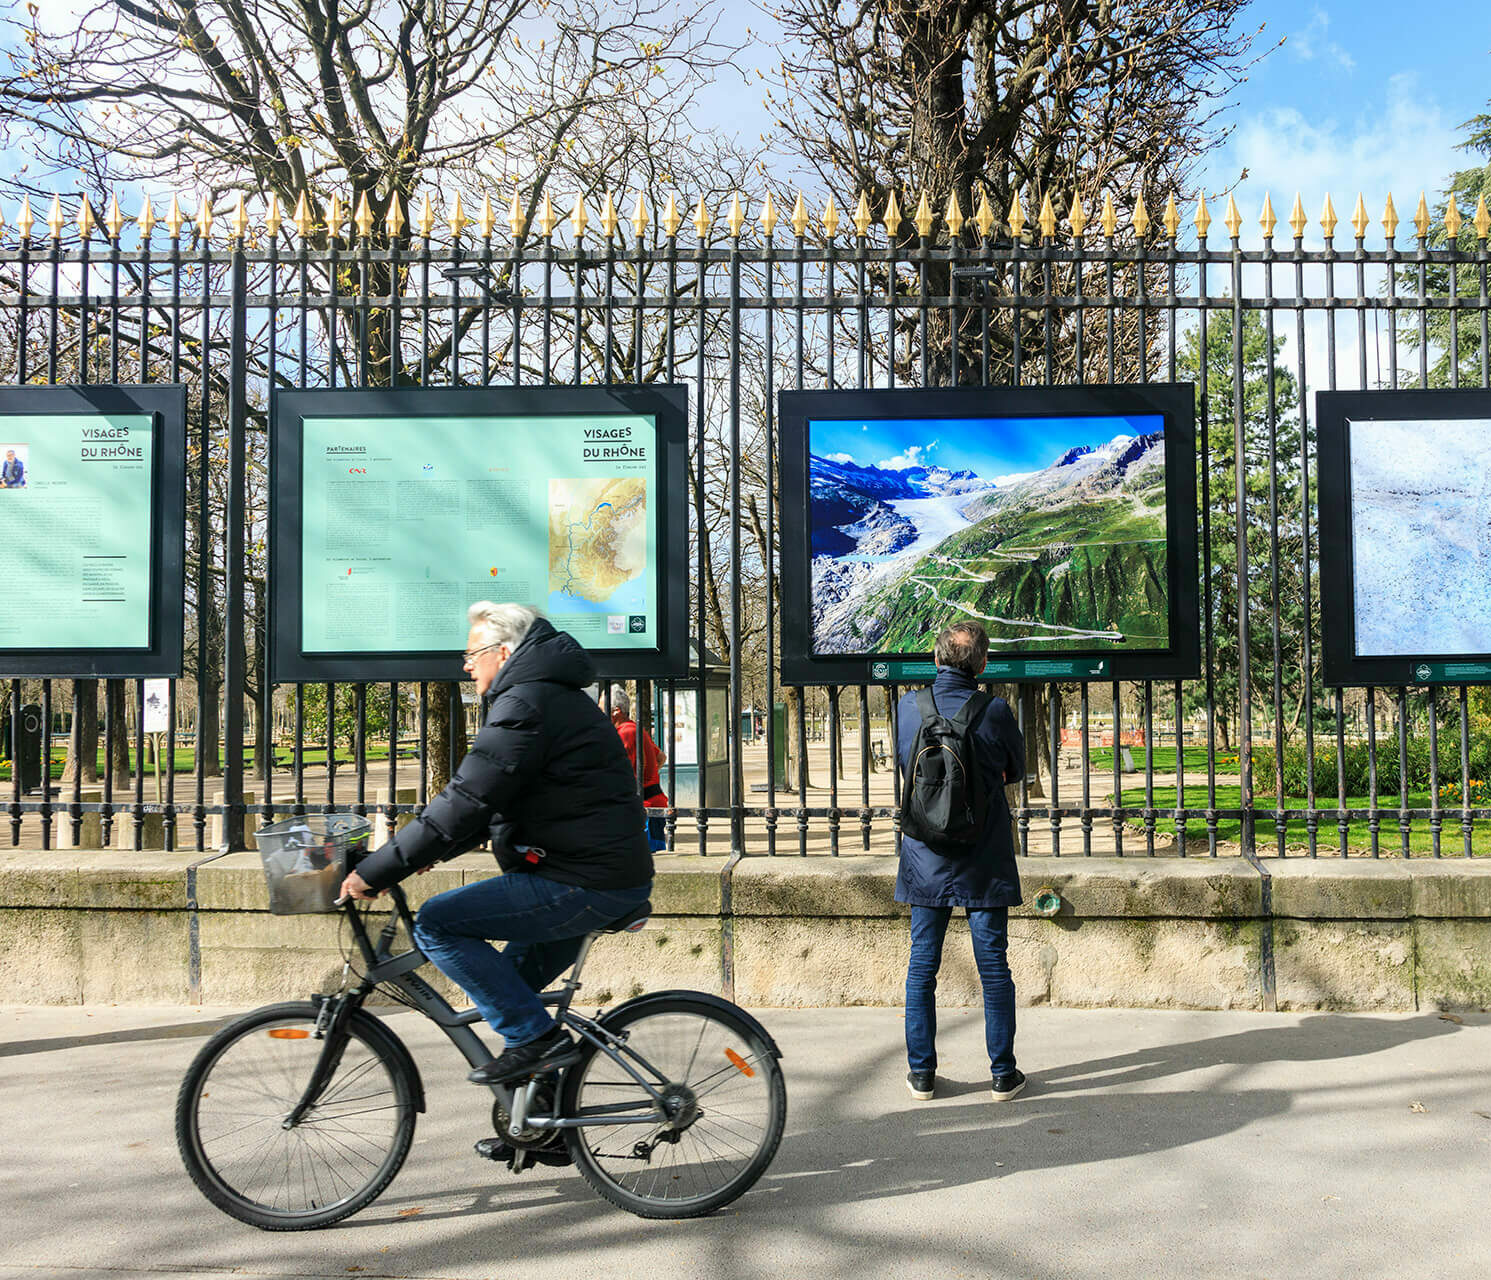 Exposition "Visages du Rhône" de Camille Moirenc, jardin du Luxembourg, Paris.